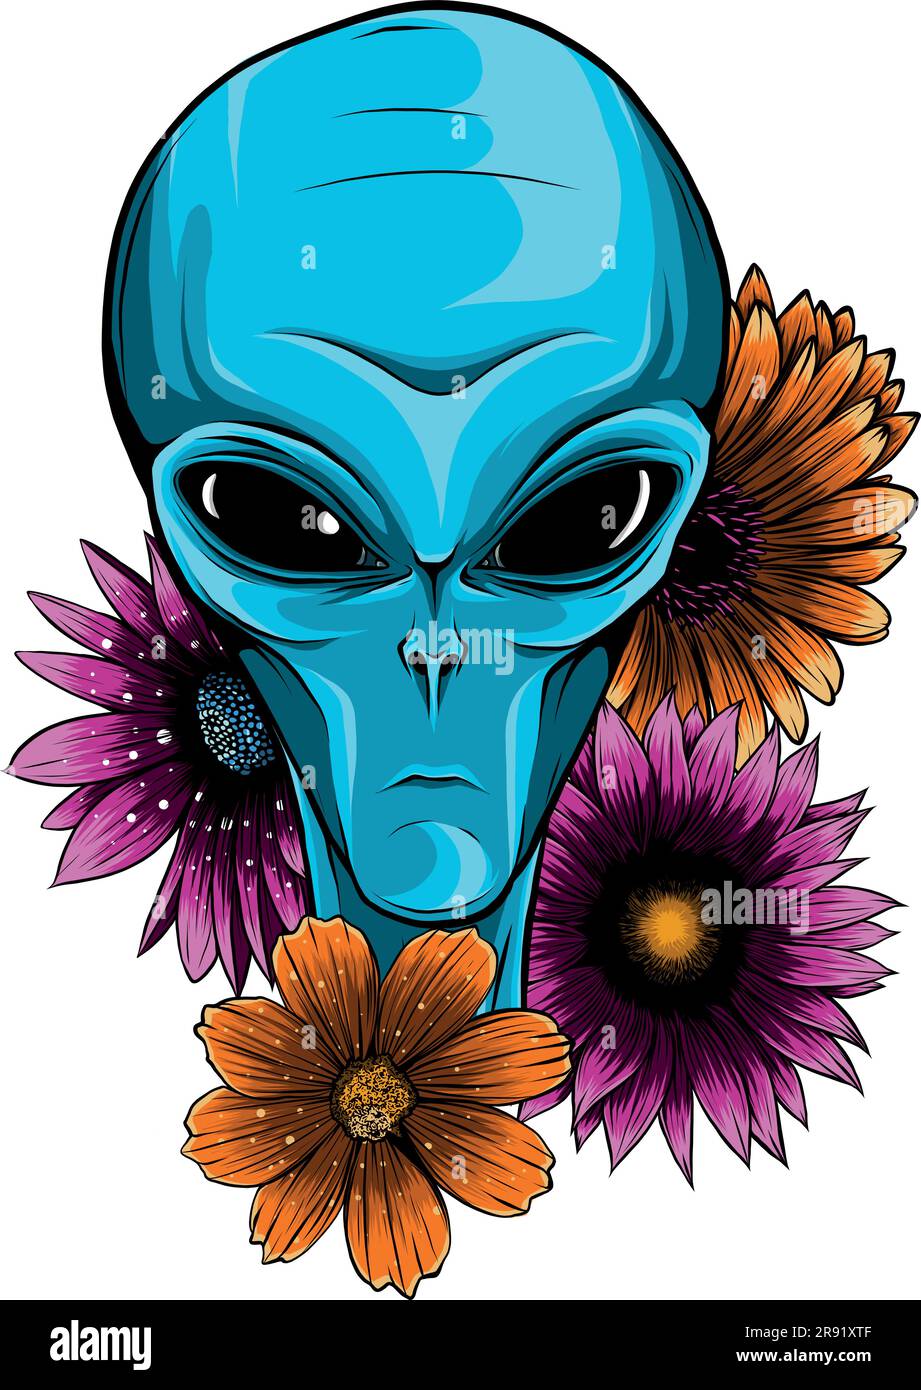 Illustrazione vettoriale di Alien Face Flowers con fiore Illustrazione Vettoriale